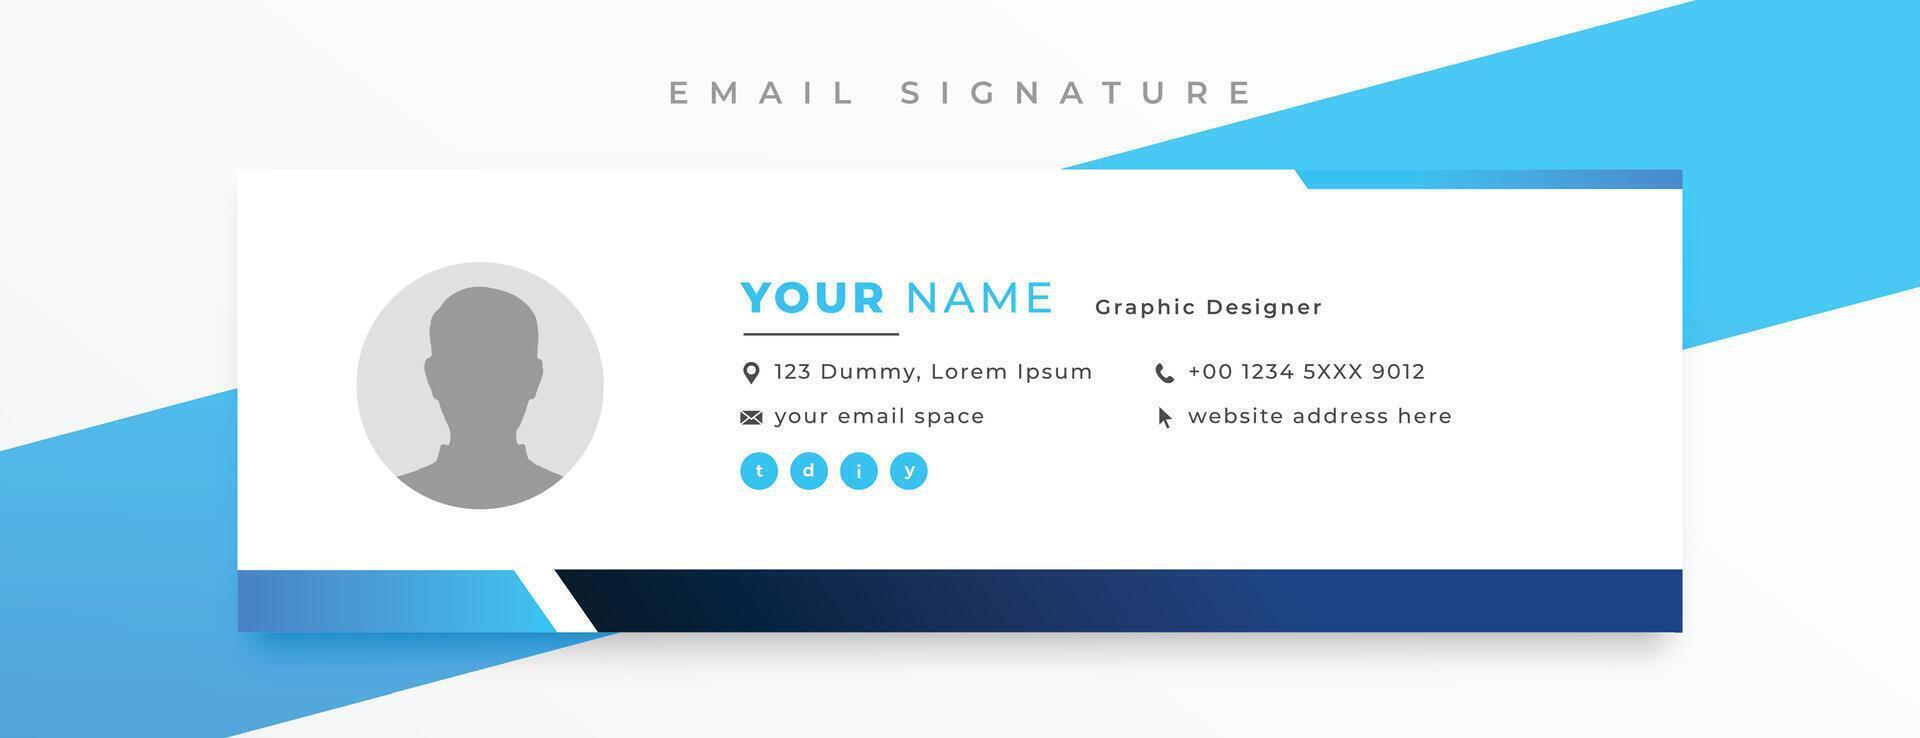 entreprise courrier Signature carte modèle conception dans minimal style vecteur